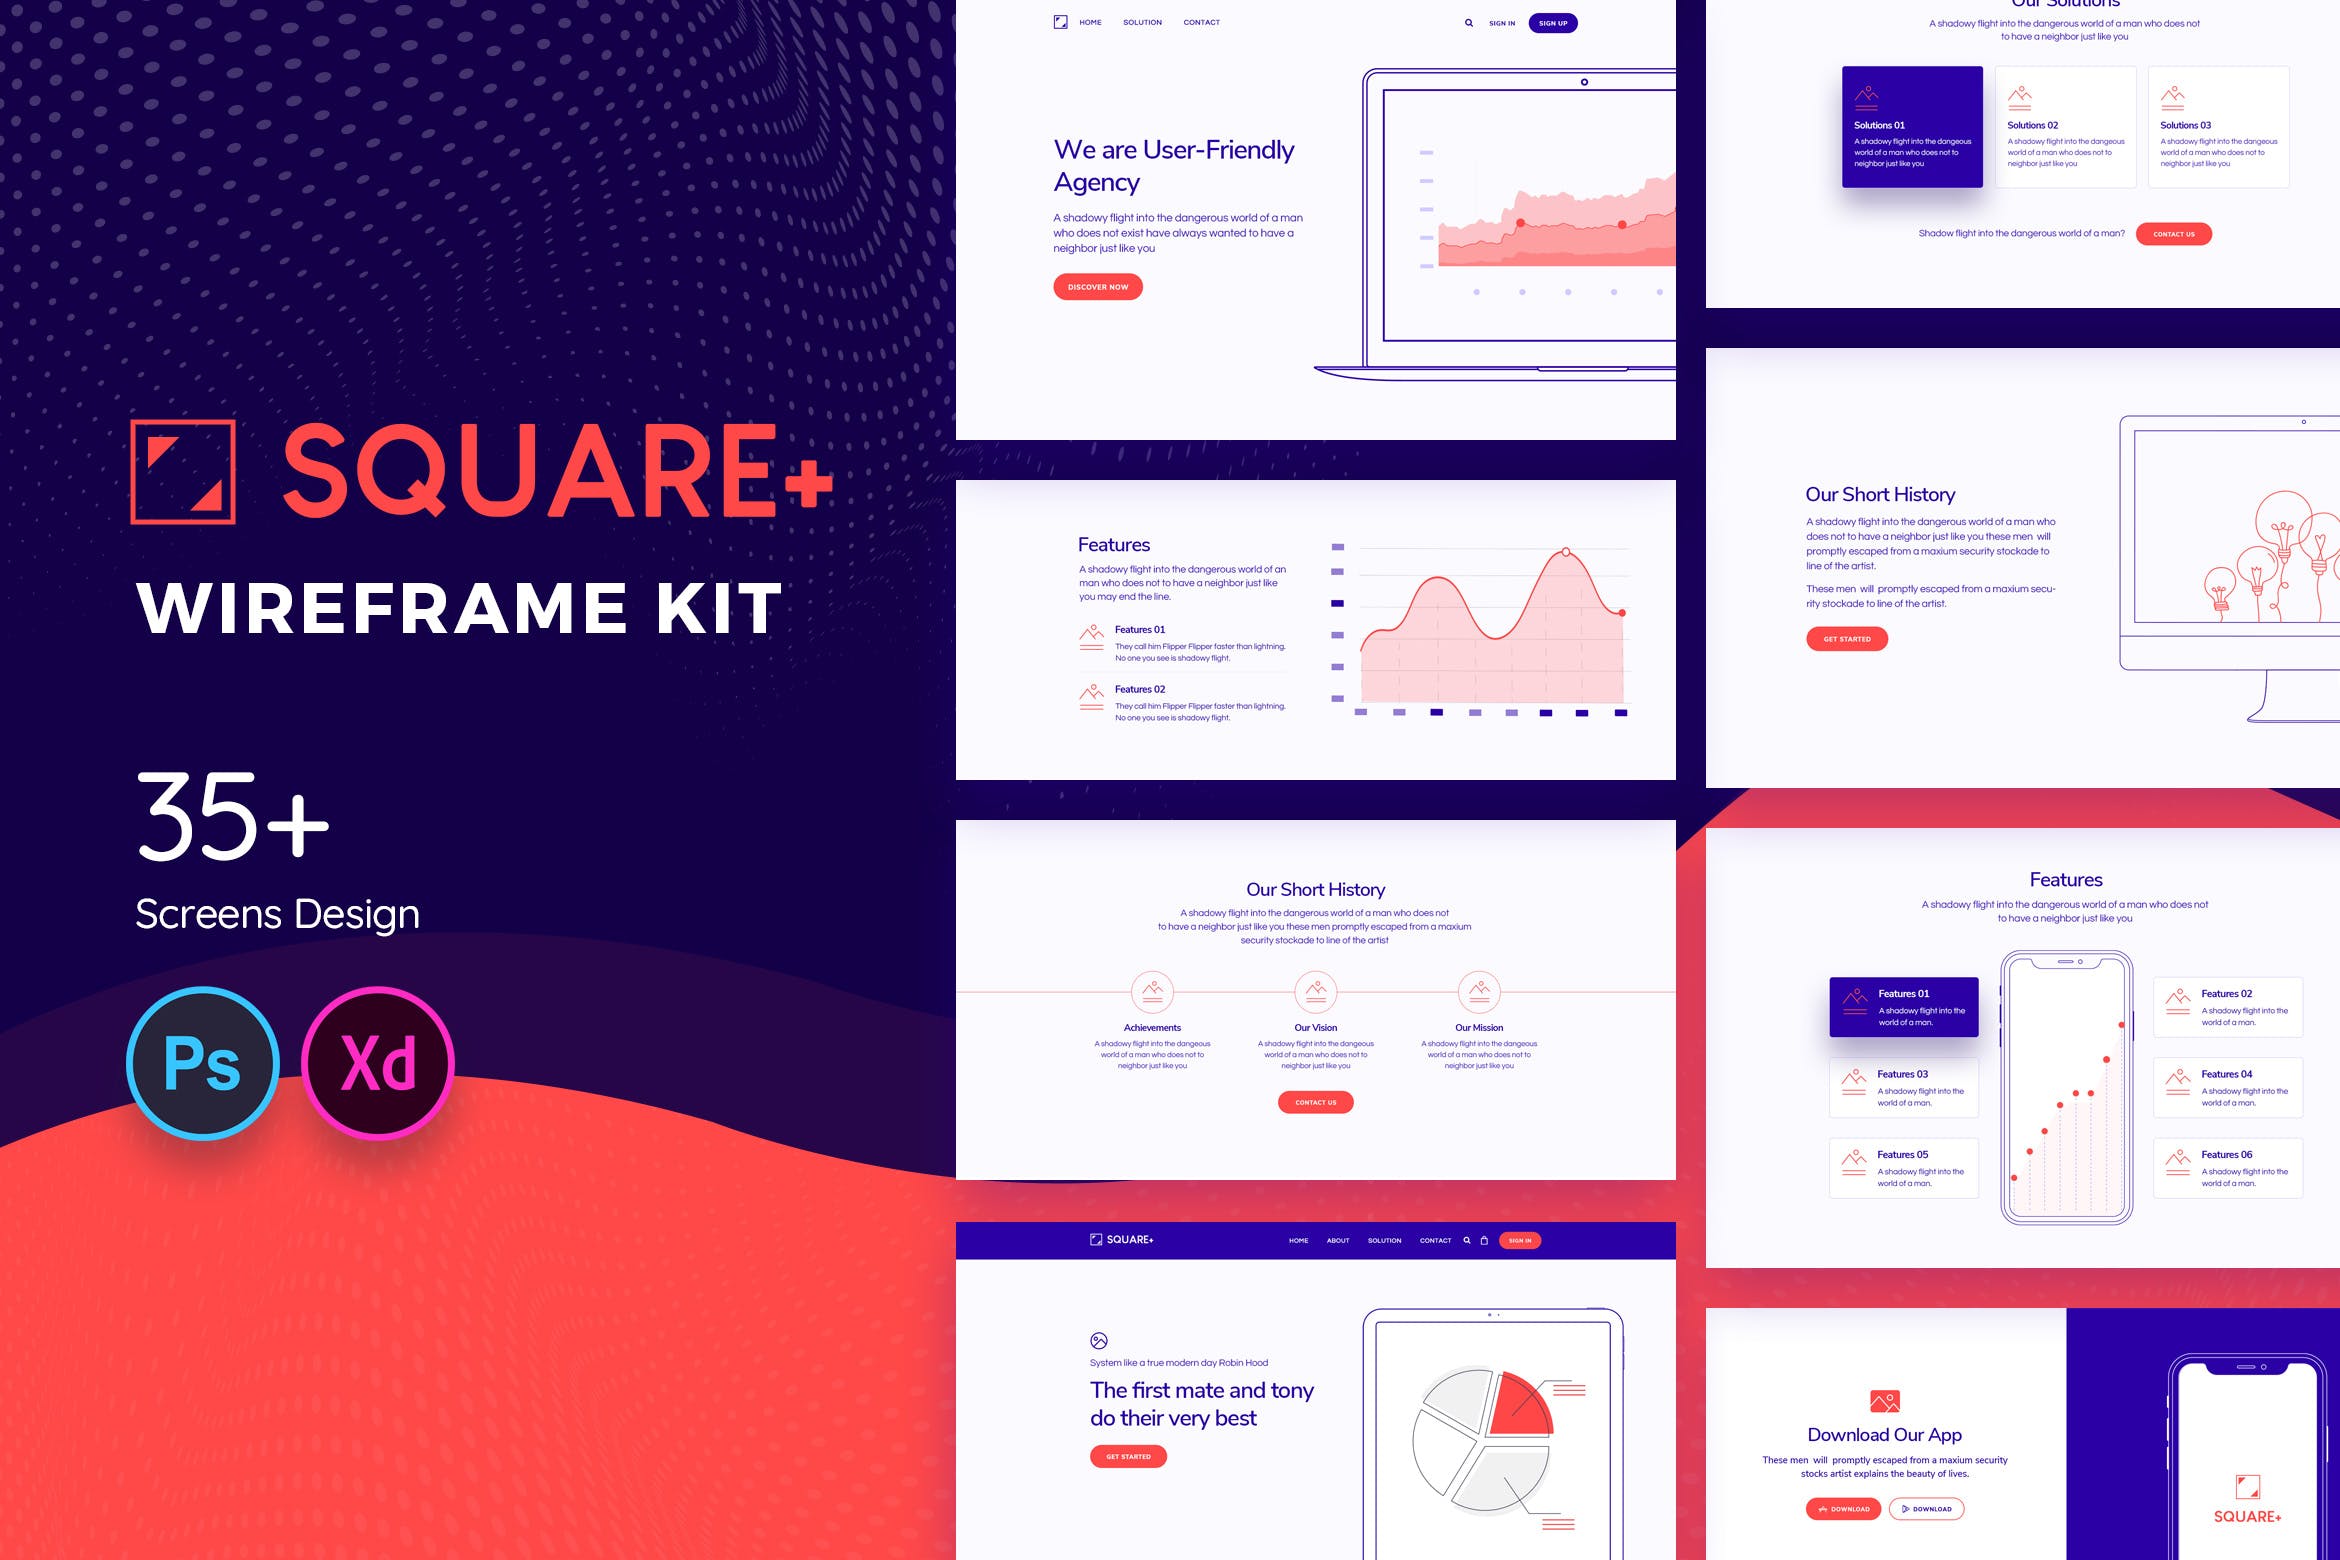 简约设计风格Web网站设计相框图设计套件 Square+ Web Wireframe Kit插图